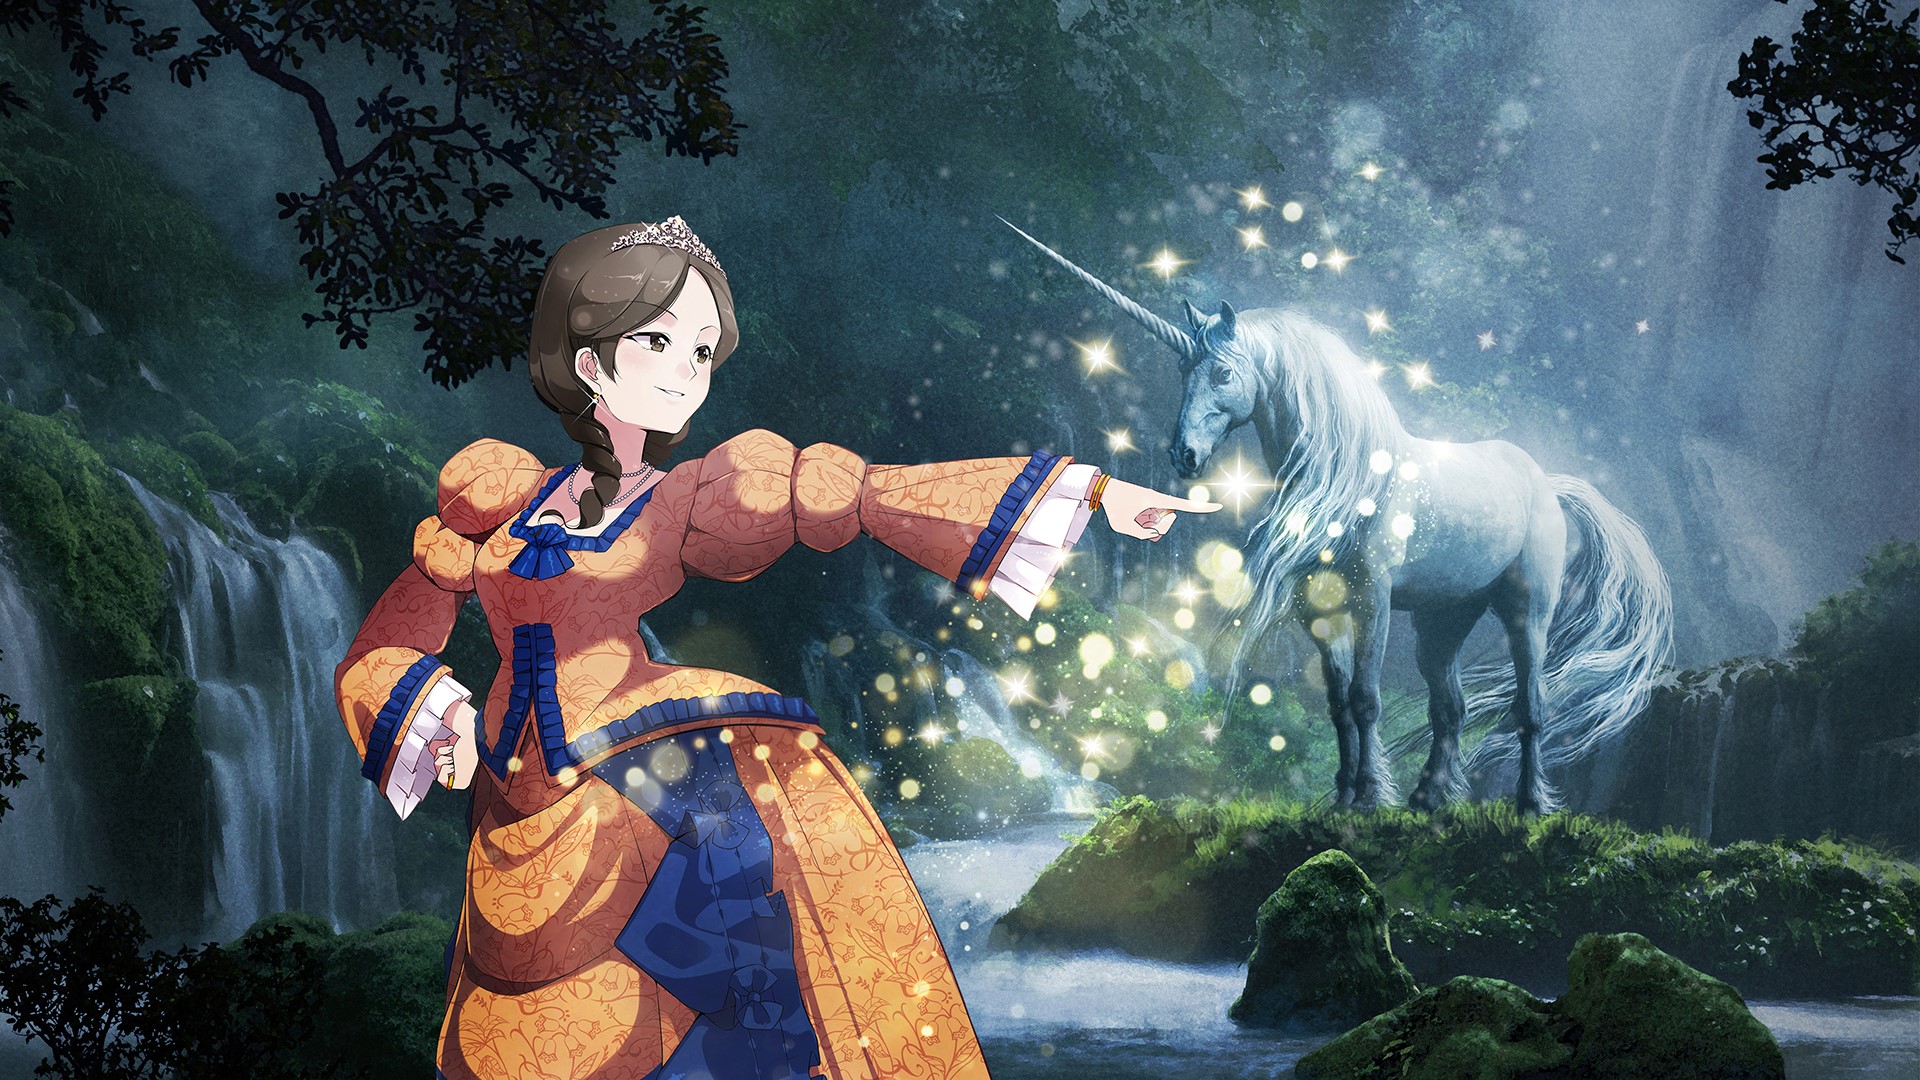 En mangaprinssesa tillsammans med en glimrande enhörning.